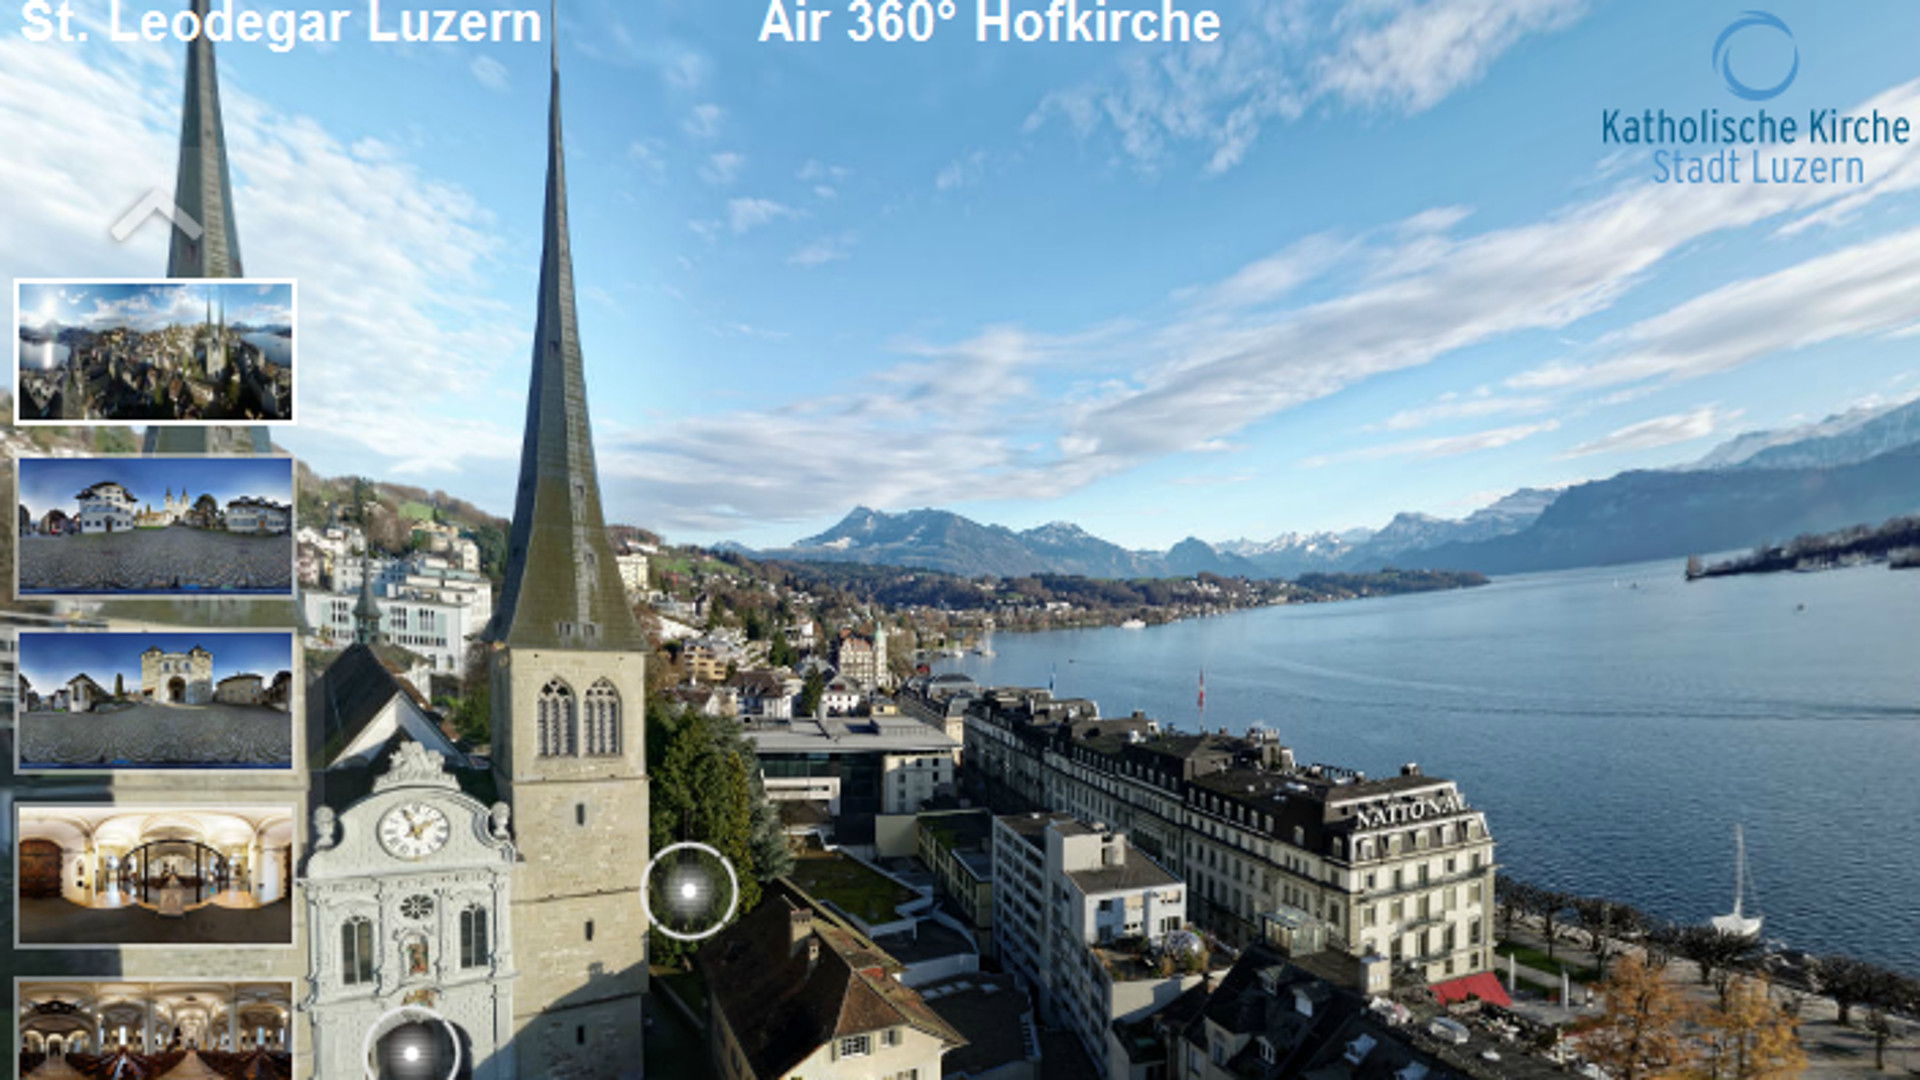 Panoramabild von St. Leodegar Luzern, Blick auf Rigi und See